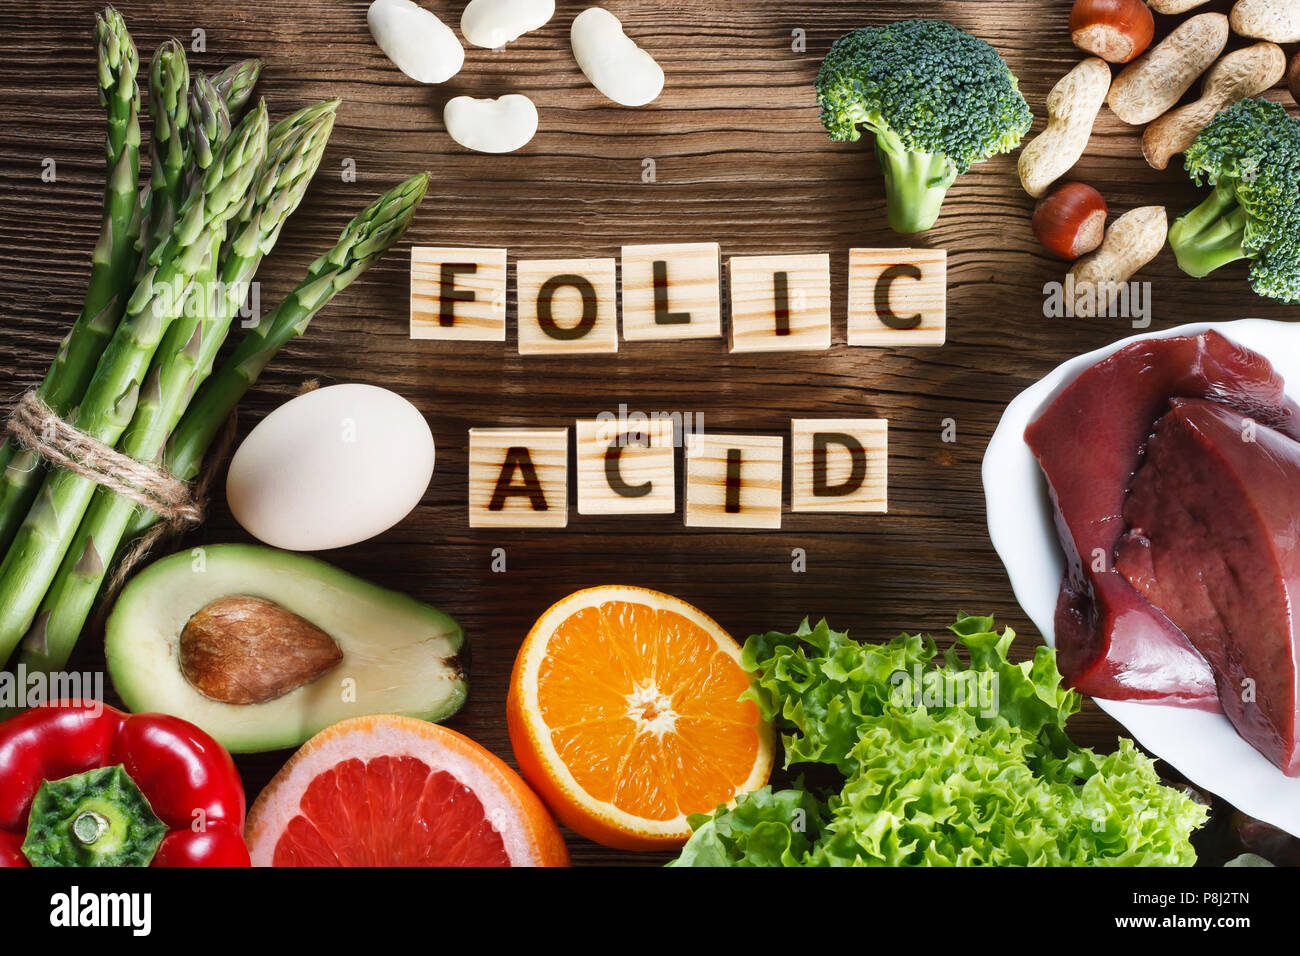 Fonti naturali di acido folico come fegato, asparagi, broccoli, uova, insalata di avocado, paprica, dadi, arancio, barbabietole e fagioli Foto Stock